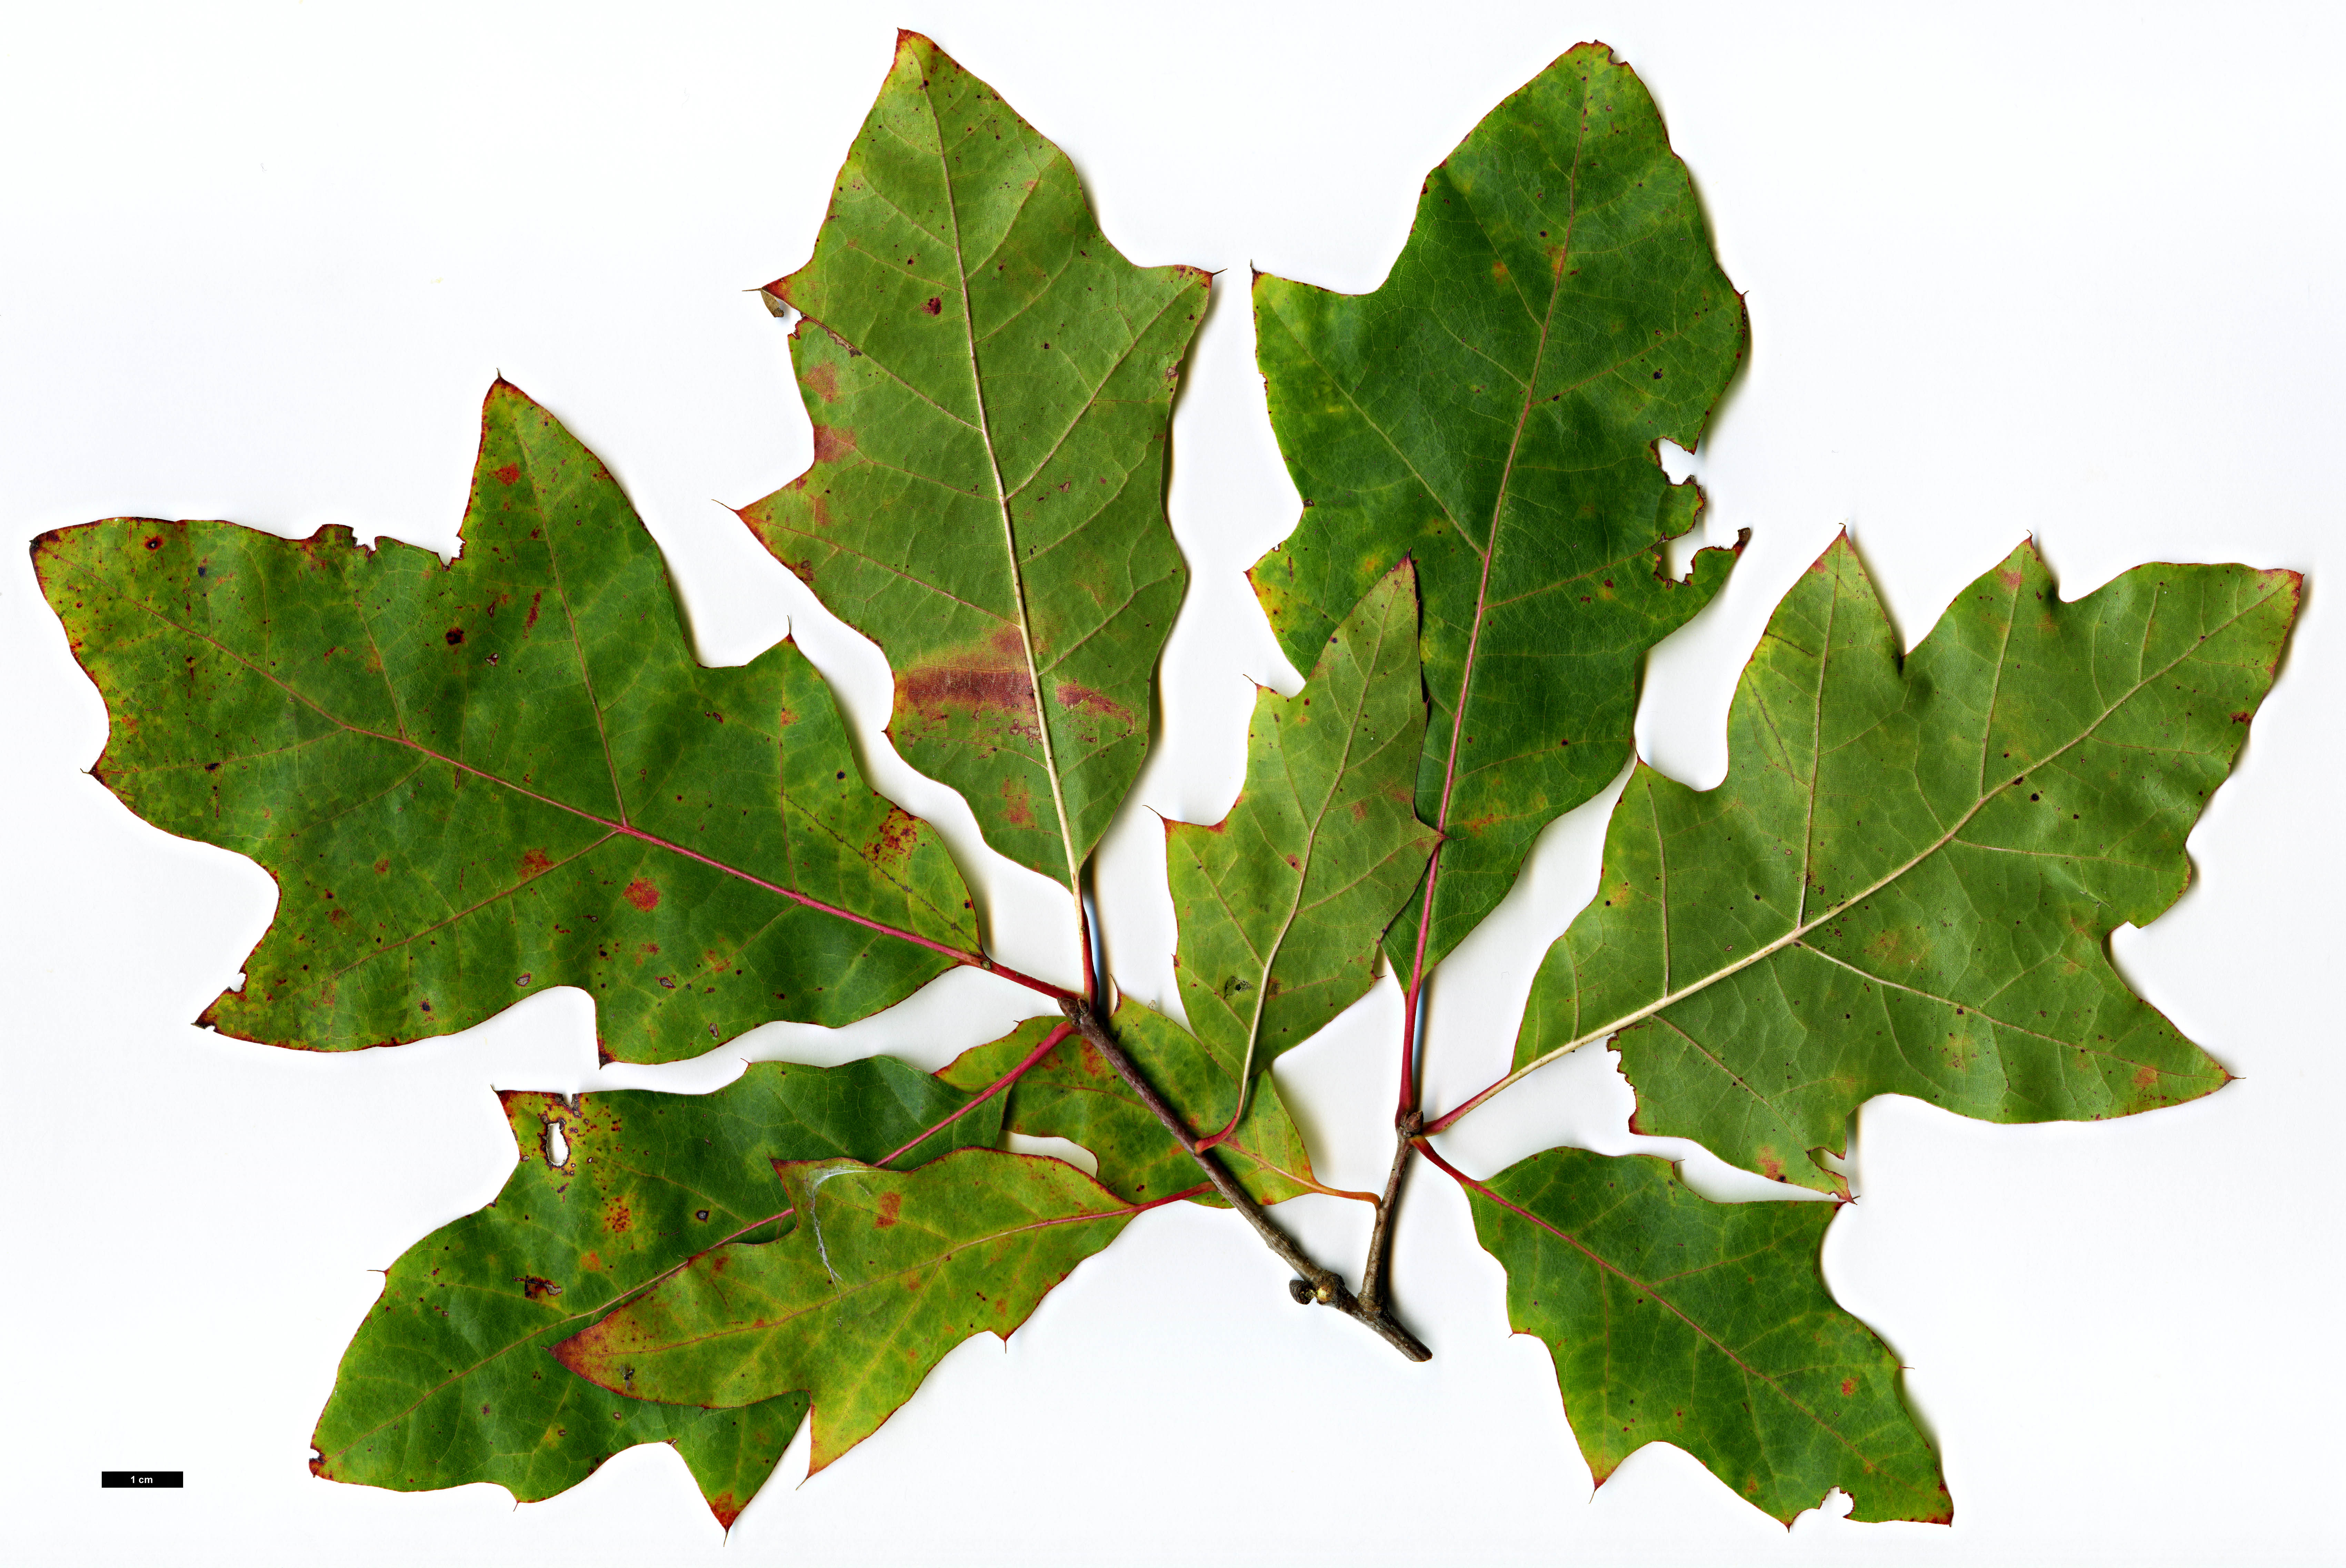 High resolution image: Family: Fagaceae - Genus: Quercus - Taxon: ×exacta (Q.phellos × Q.velutina)